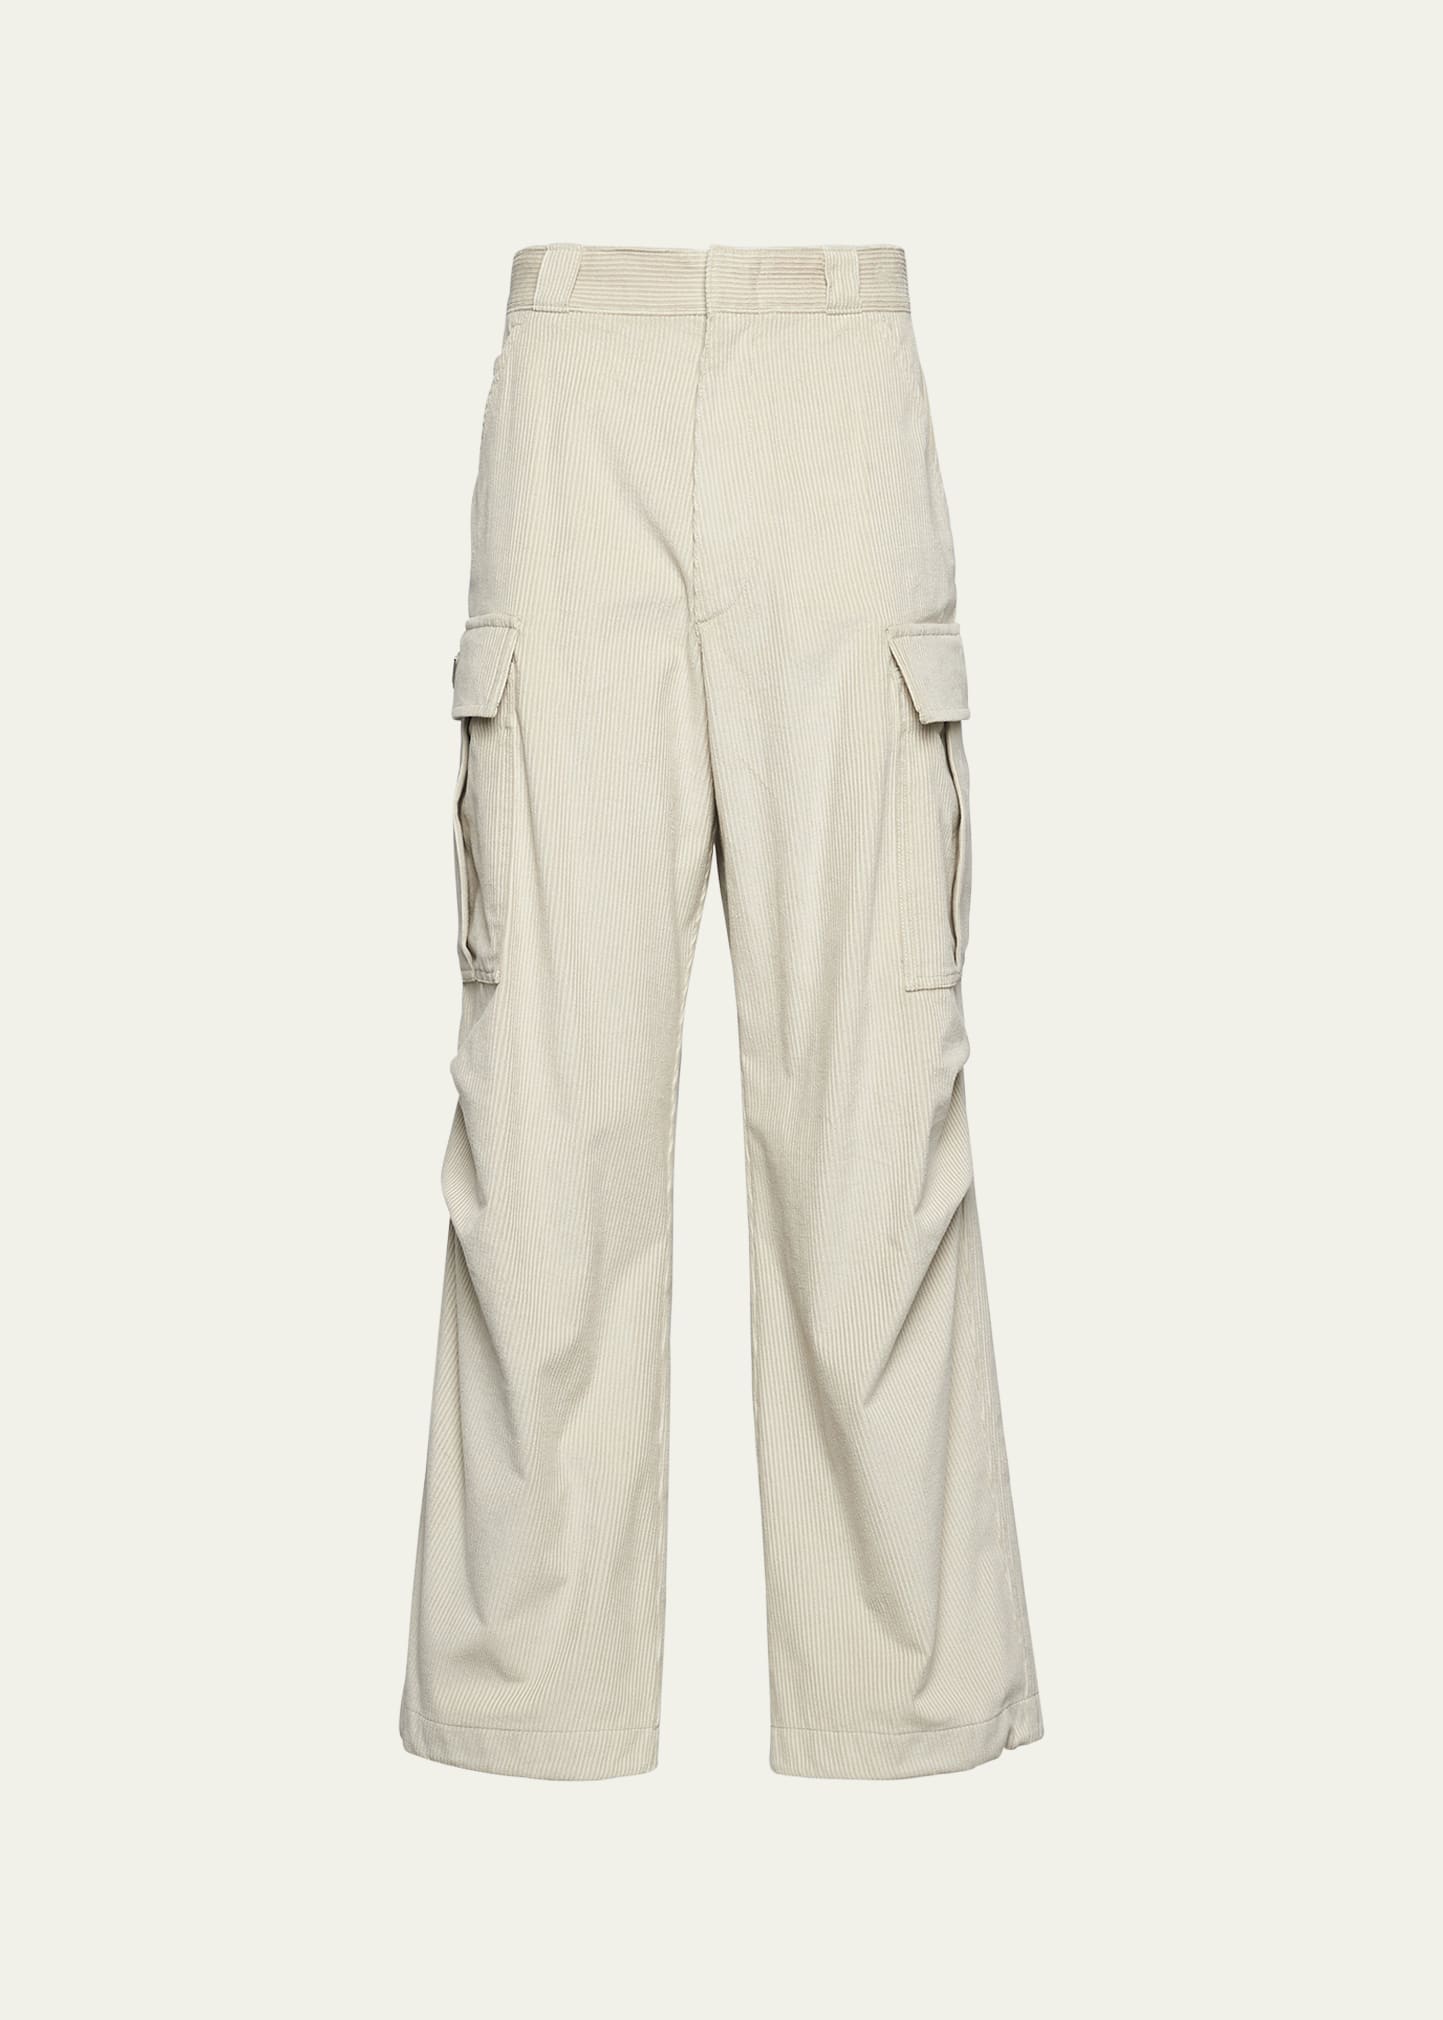 Shop Prada Men's Corduroy Cargo Pants In F0k74 Talco